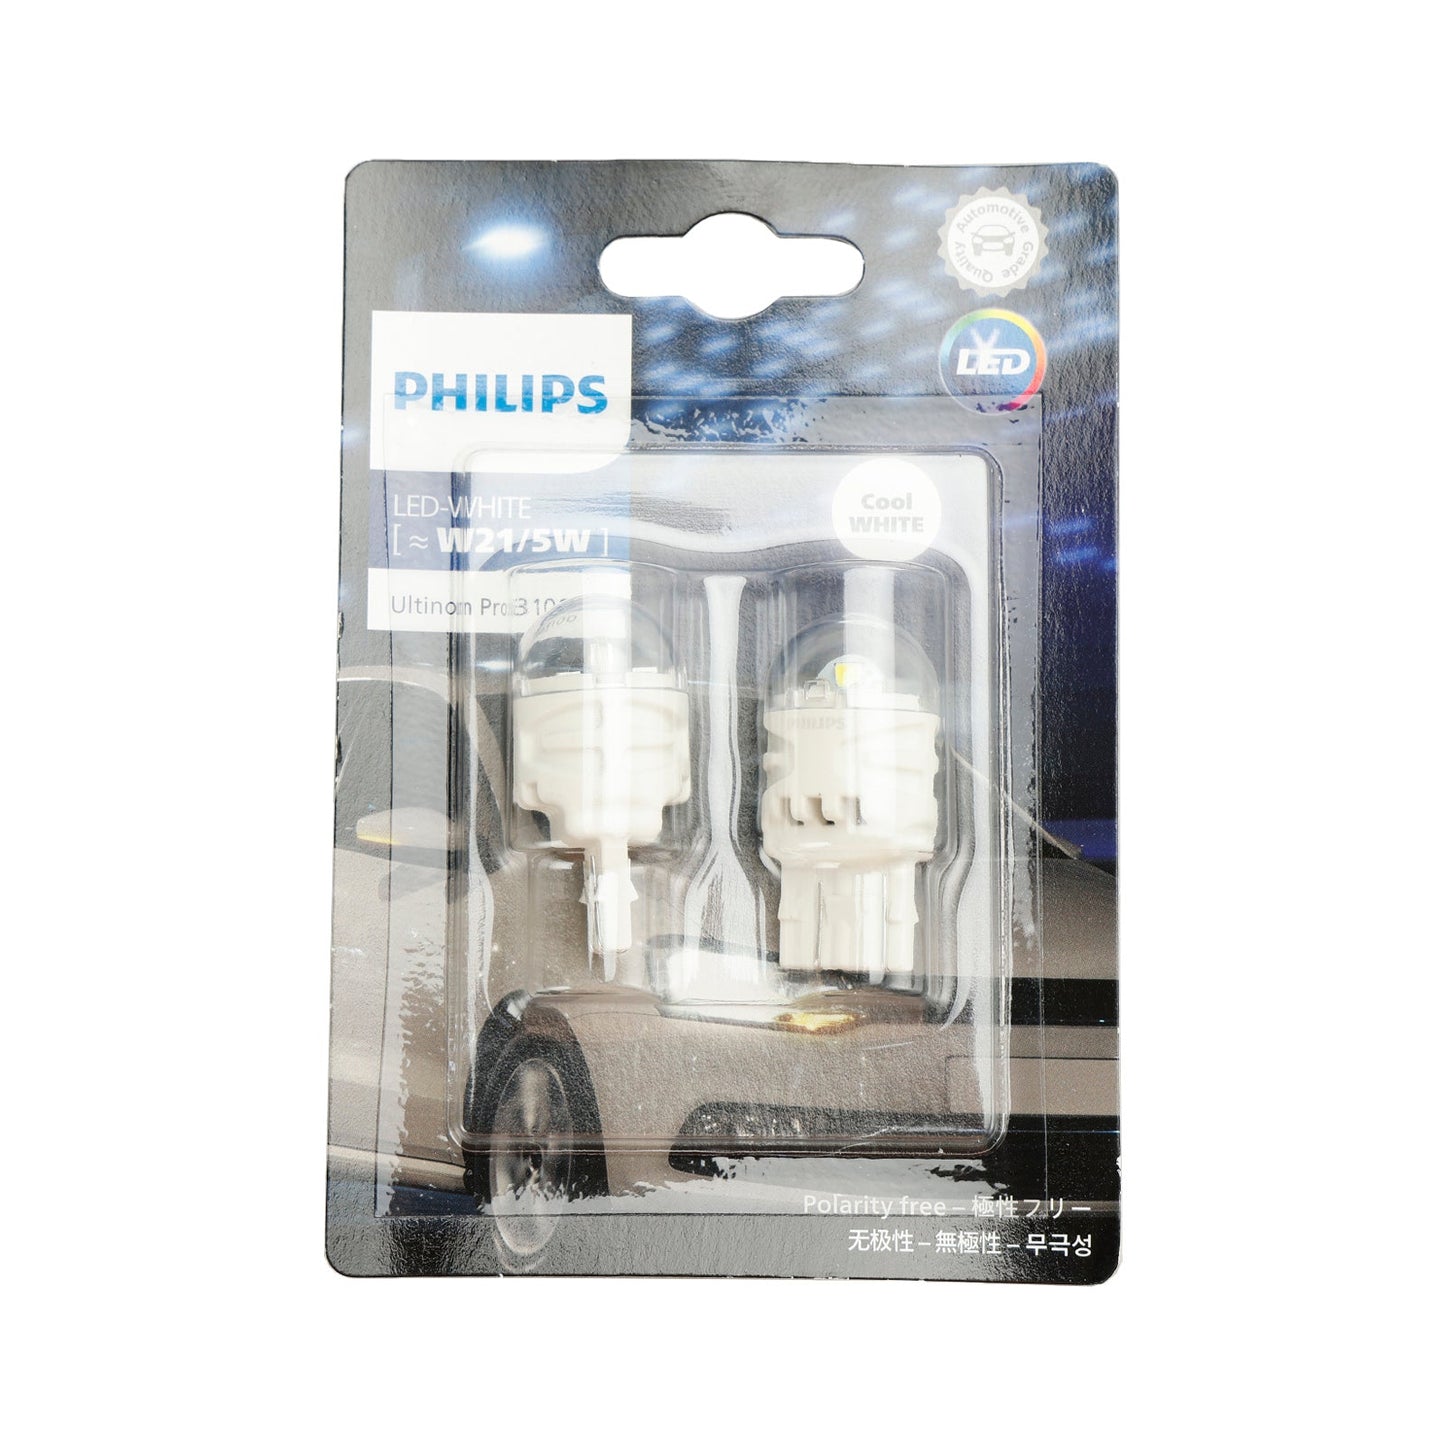 Für Philips 11066CU31B2 Ultinon Pro3100 LED-WEISS W21/5W 6000K W3x16d